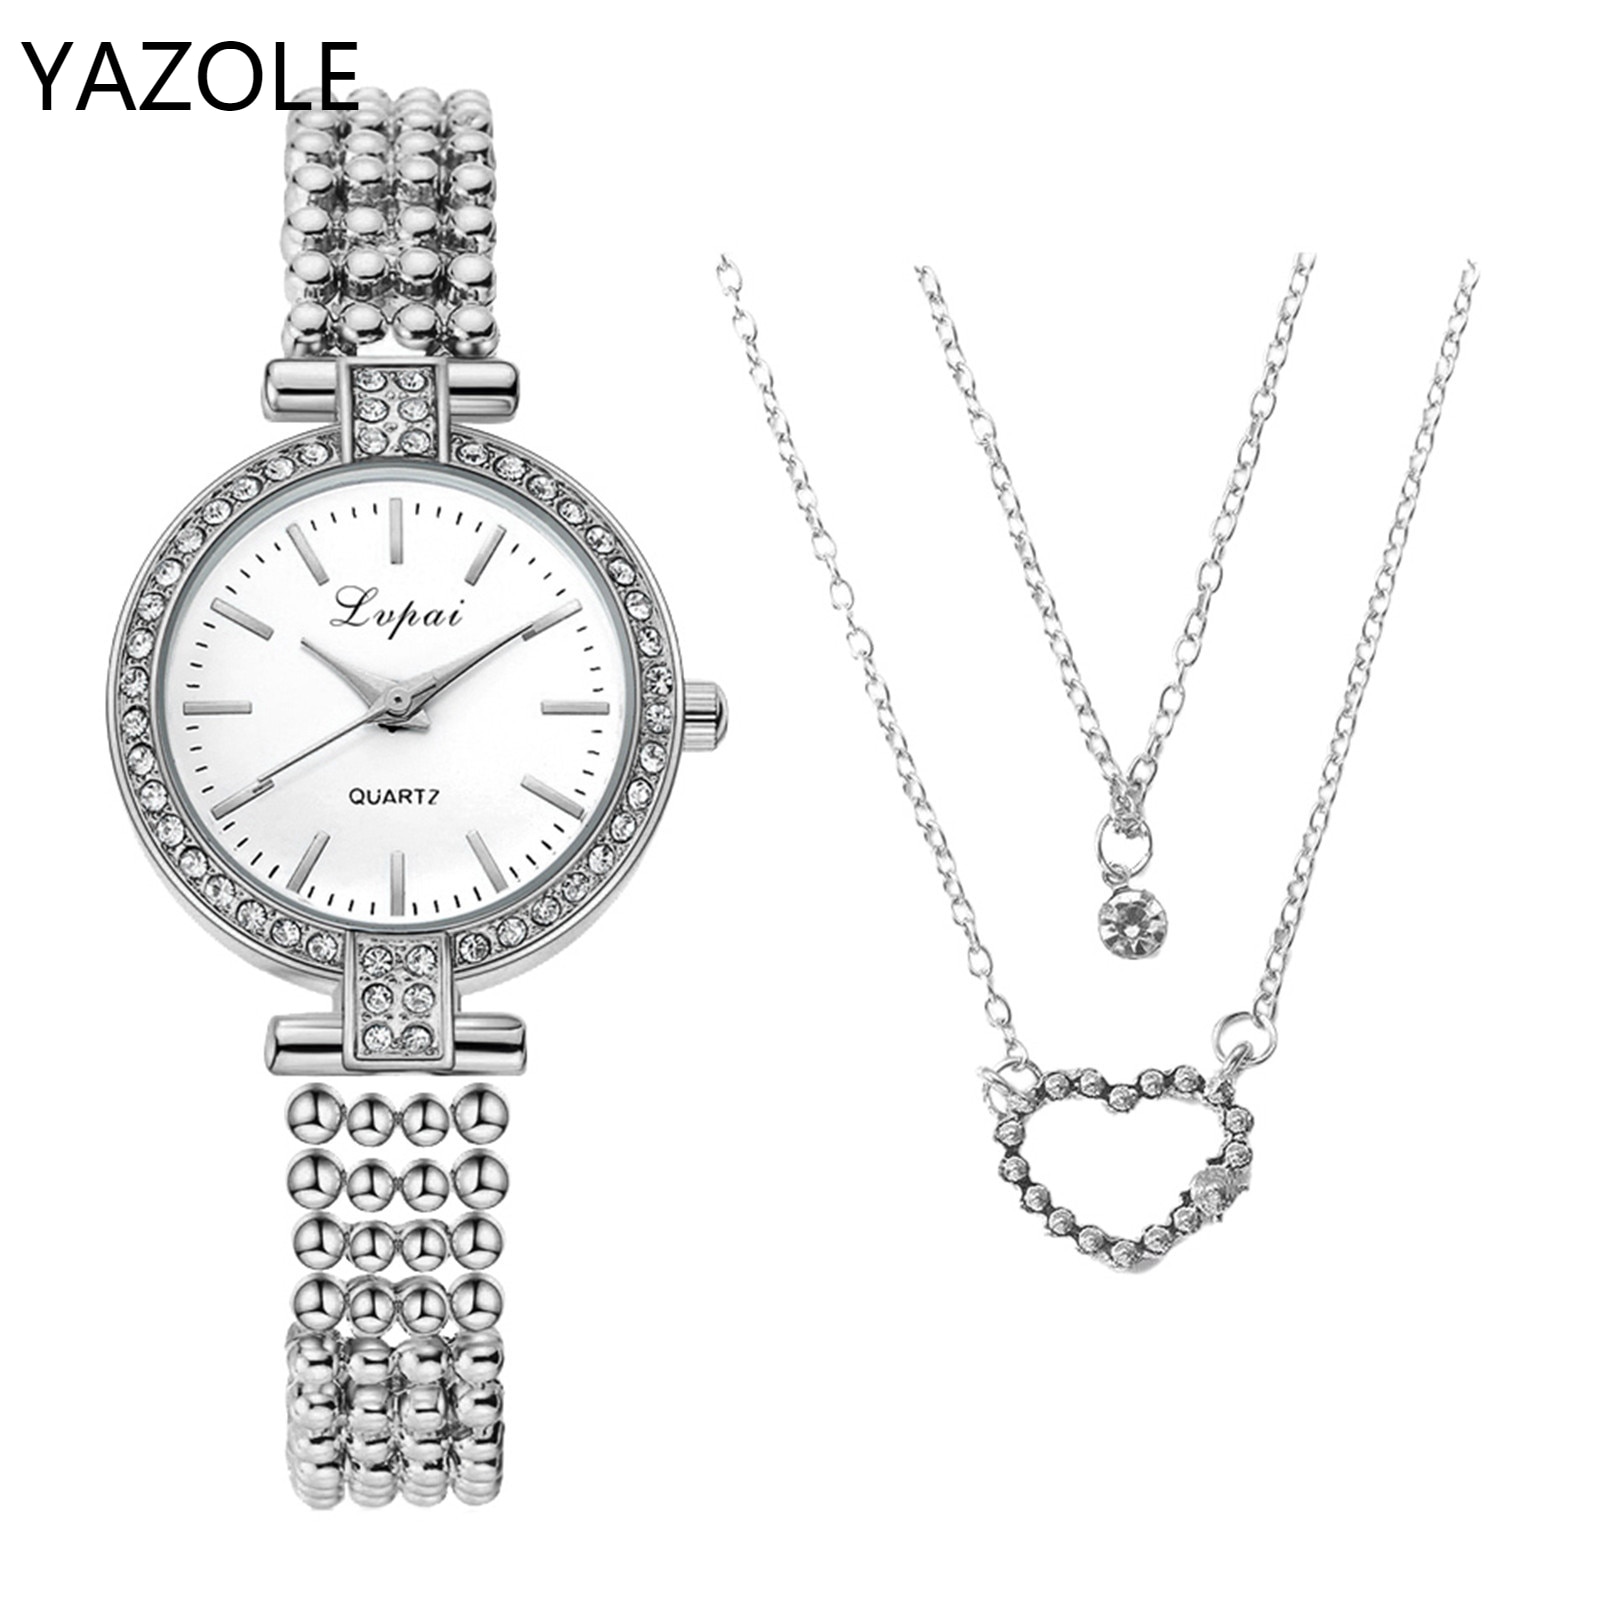 Branded Vrouw Horloge Orologio Donna Top Business Casual Quartz Luxe Horloge Met Ketting Dames Sieraden Combinatie